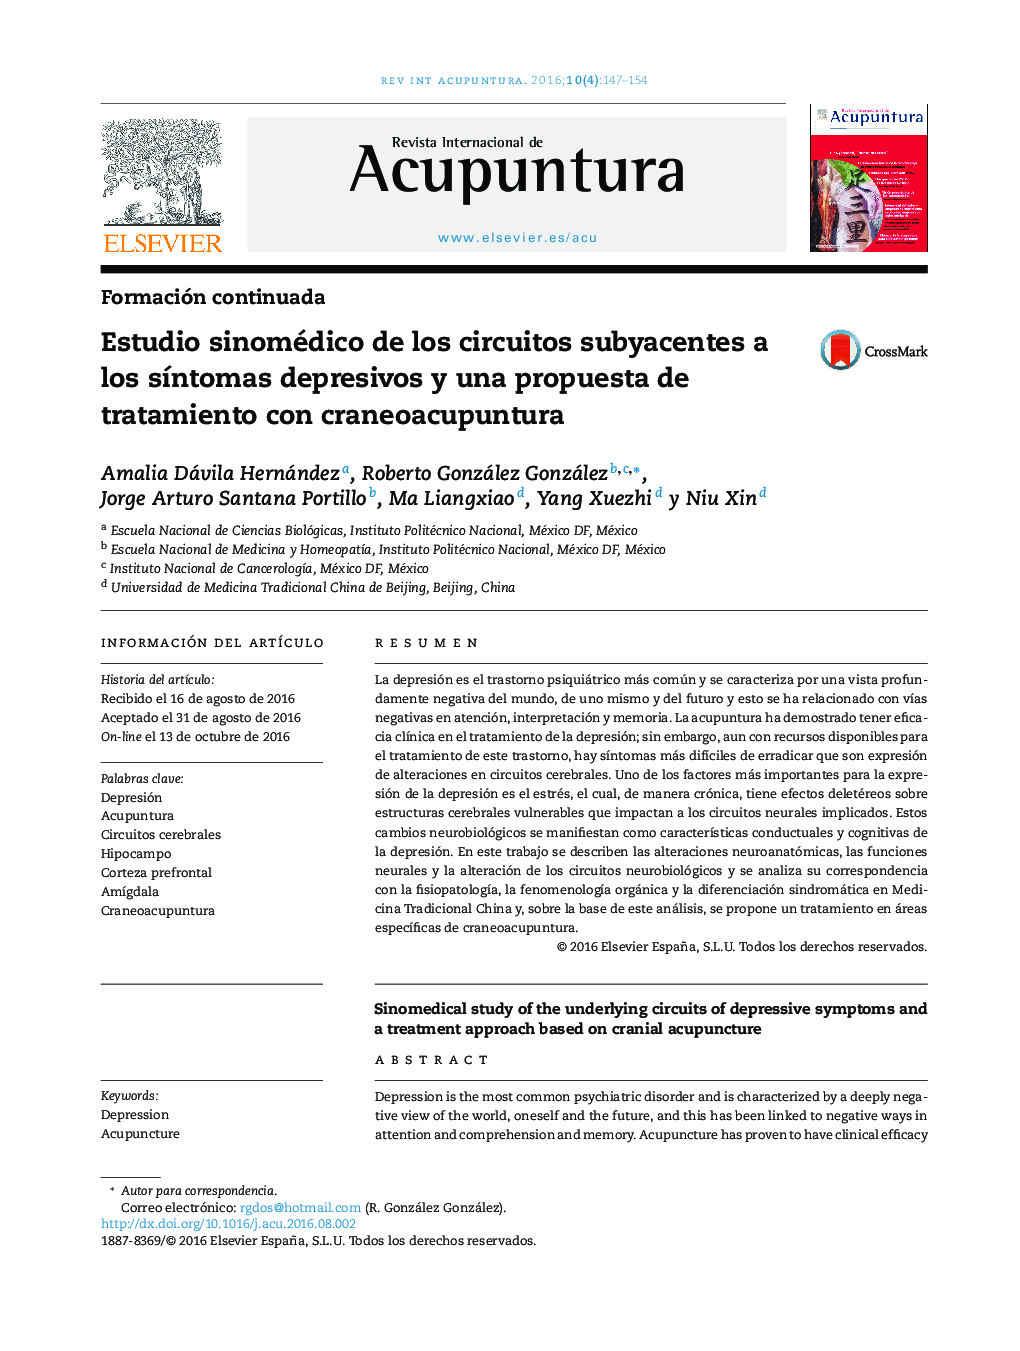 Estudio sinomédico de los circuitos subyacentes a los sÃ­ntomas depresivos y una propuesta de tratamiento con craneoacupuntura